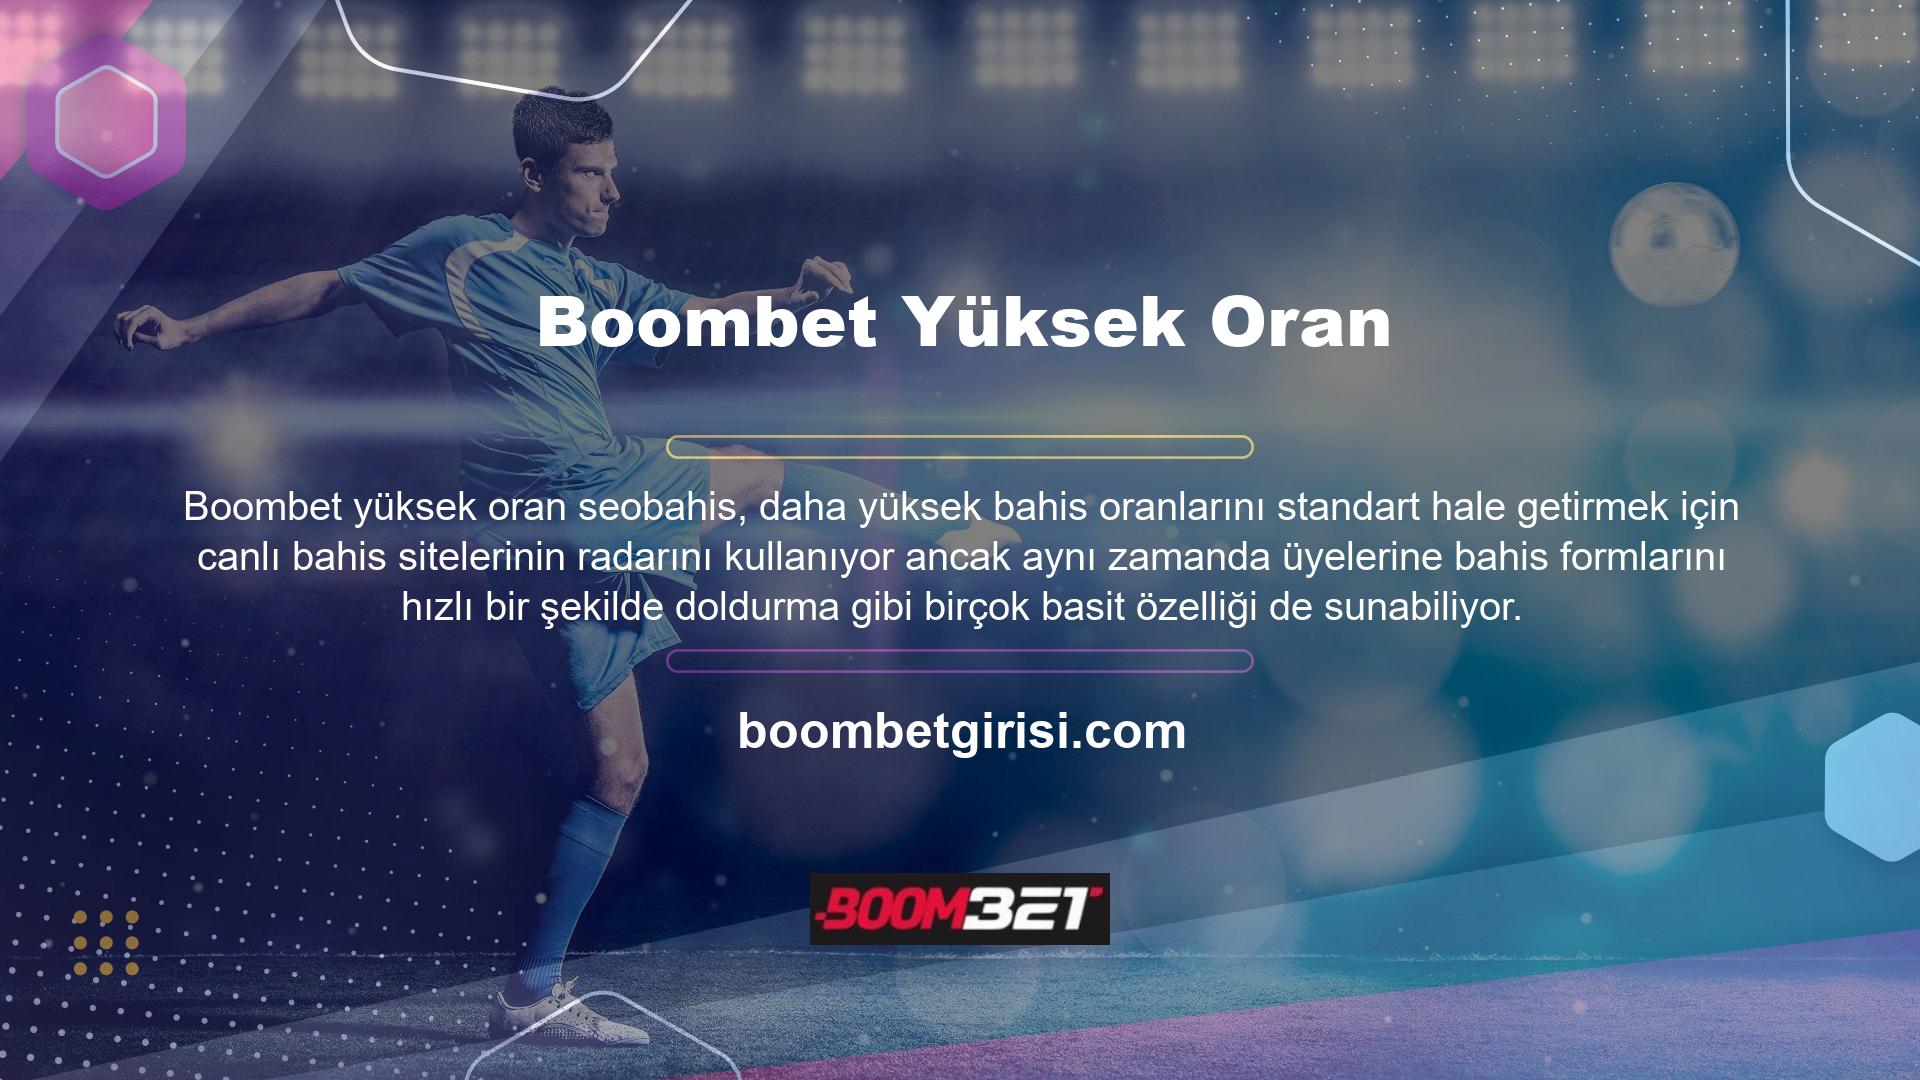 Ayrıca üyeler Boombet TV'nin canlı maç yayını özelliğini şifresiz olarak ücretsiz olarak kullanabilmektedir